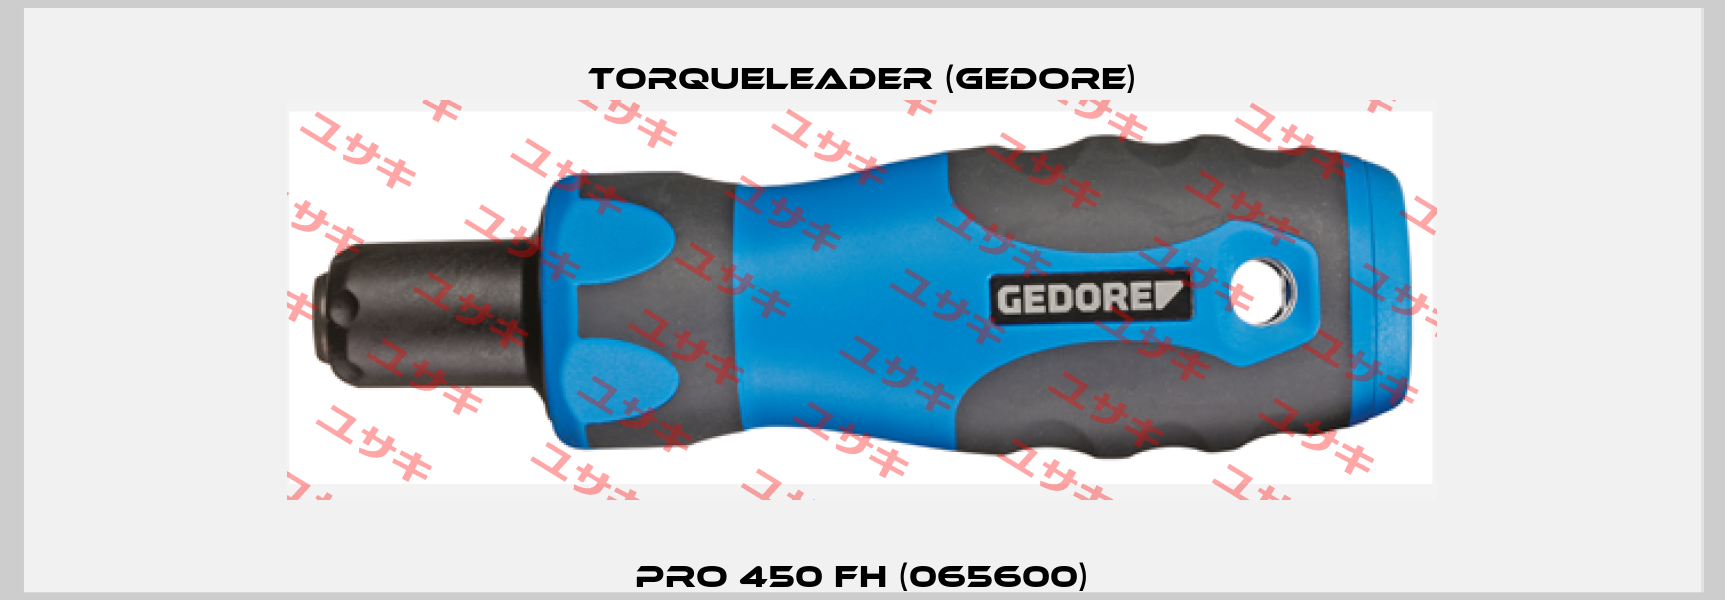 PRO 450 FH (065600) Torqueleader (Gedore)